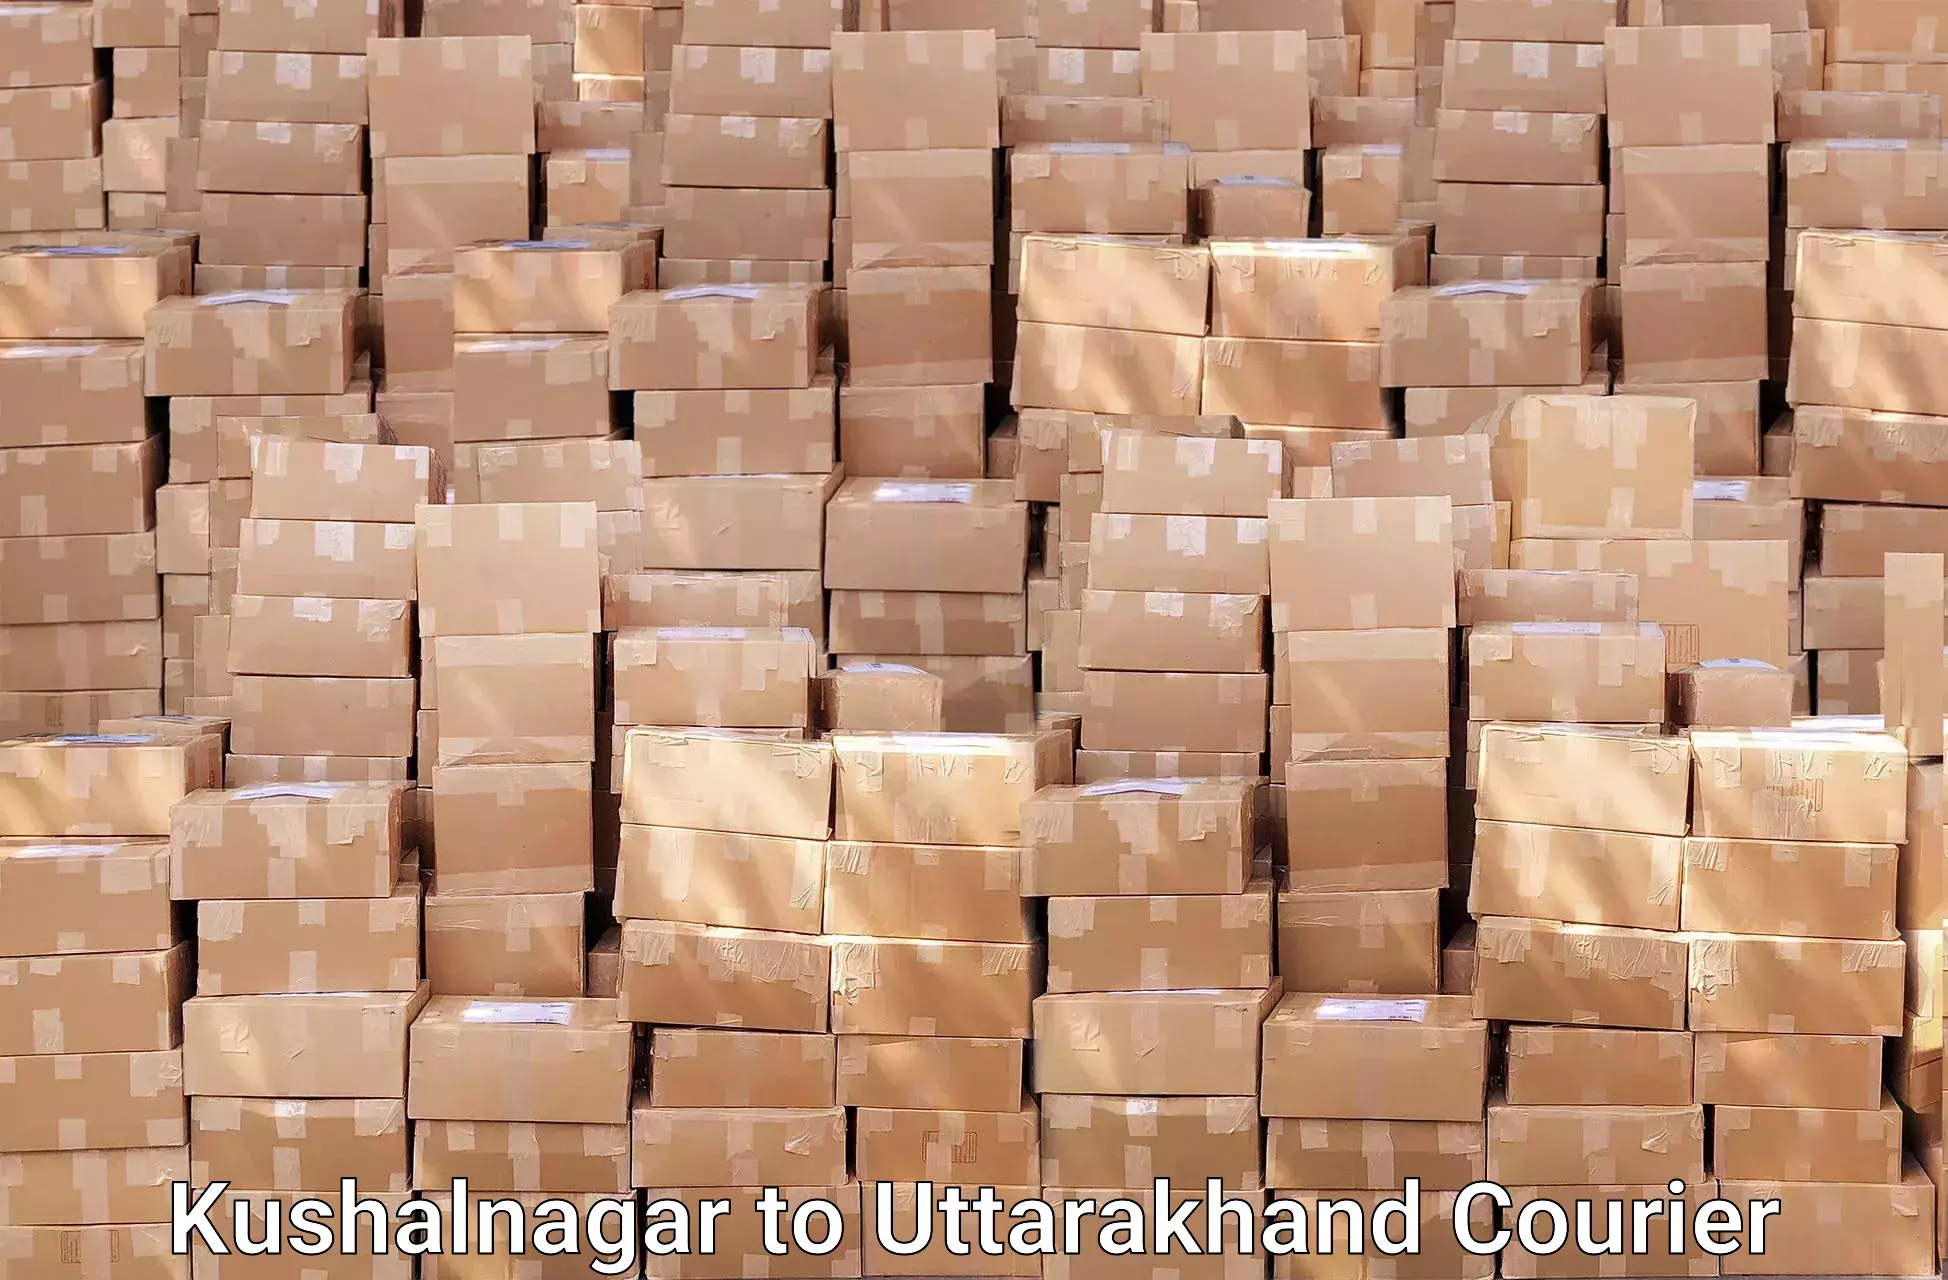 Trusted moving company Kushalnagar to Bhagwanpur